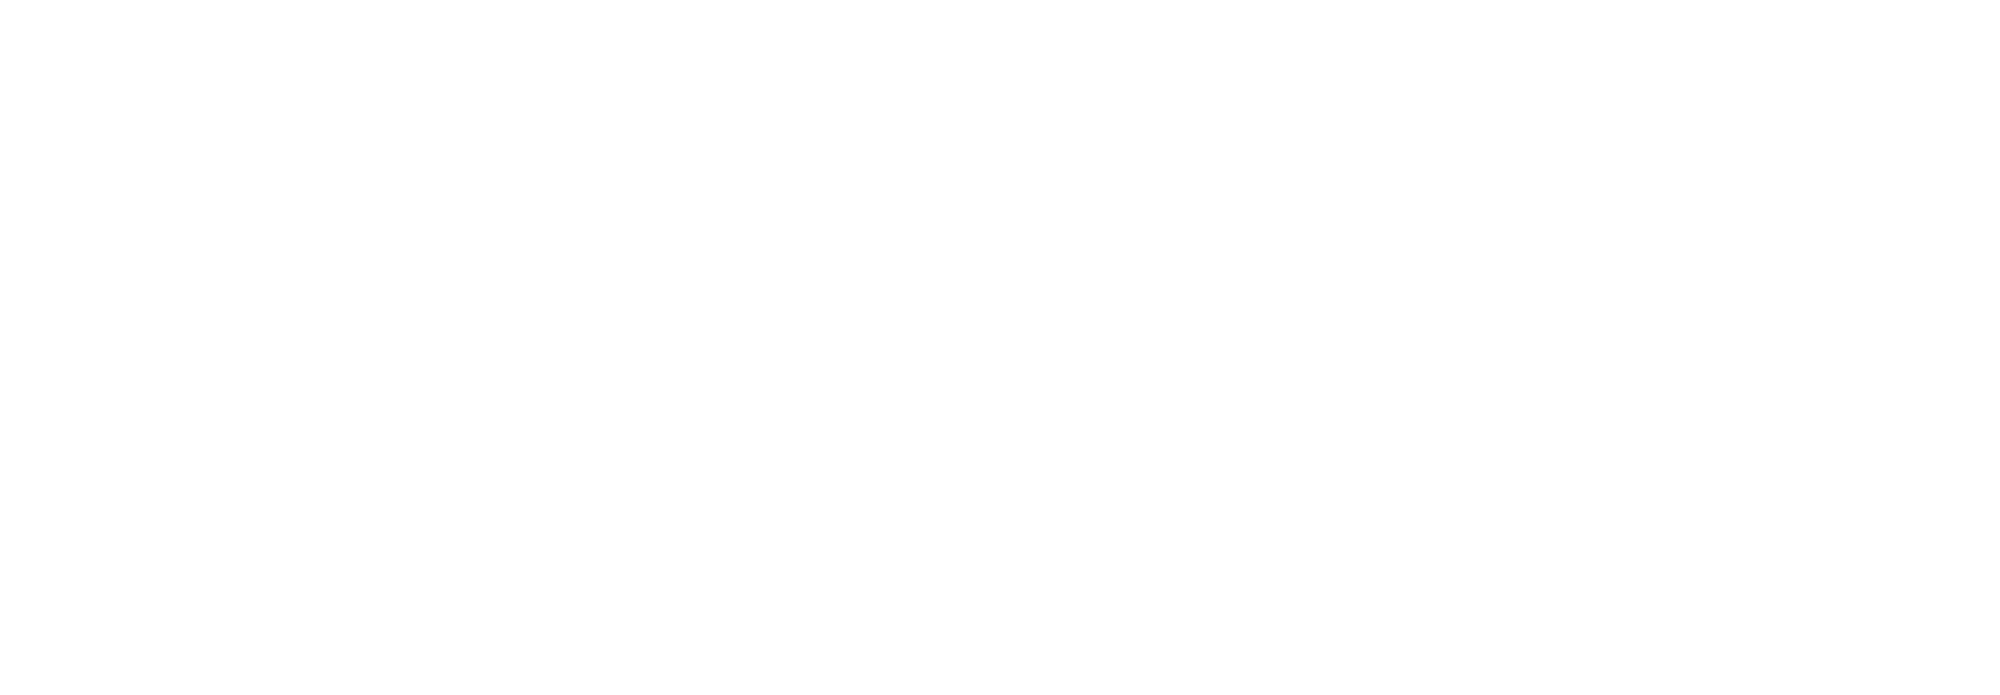 Tim Huchton Voice Over 